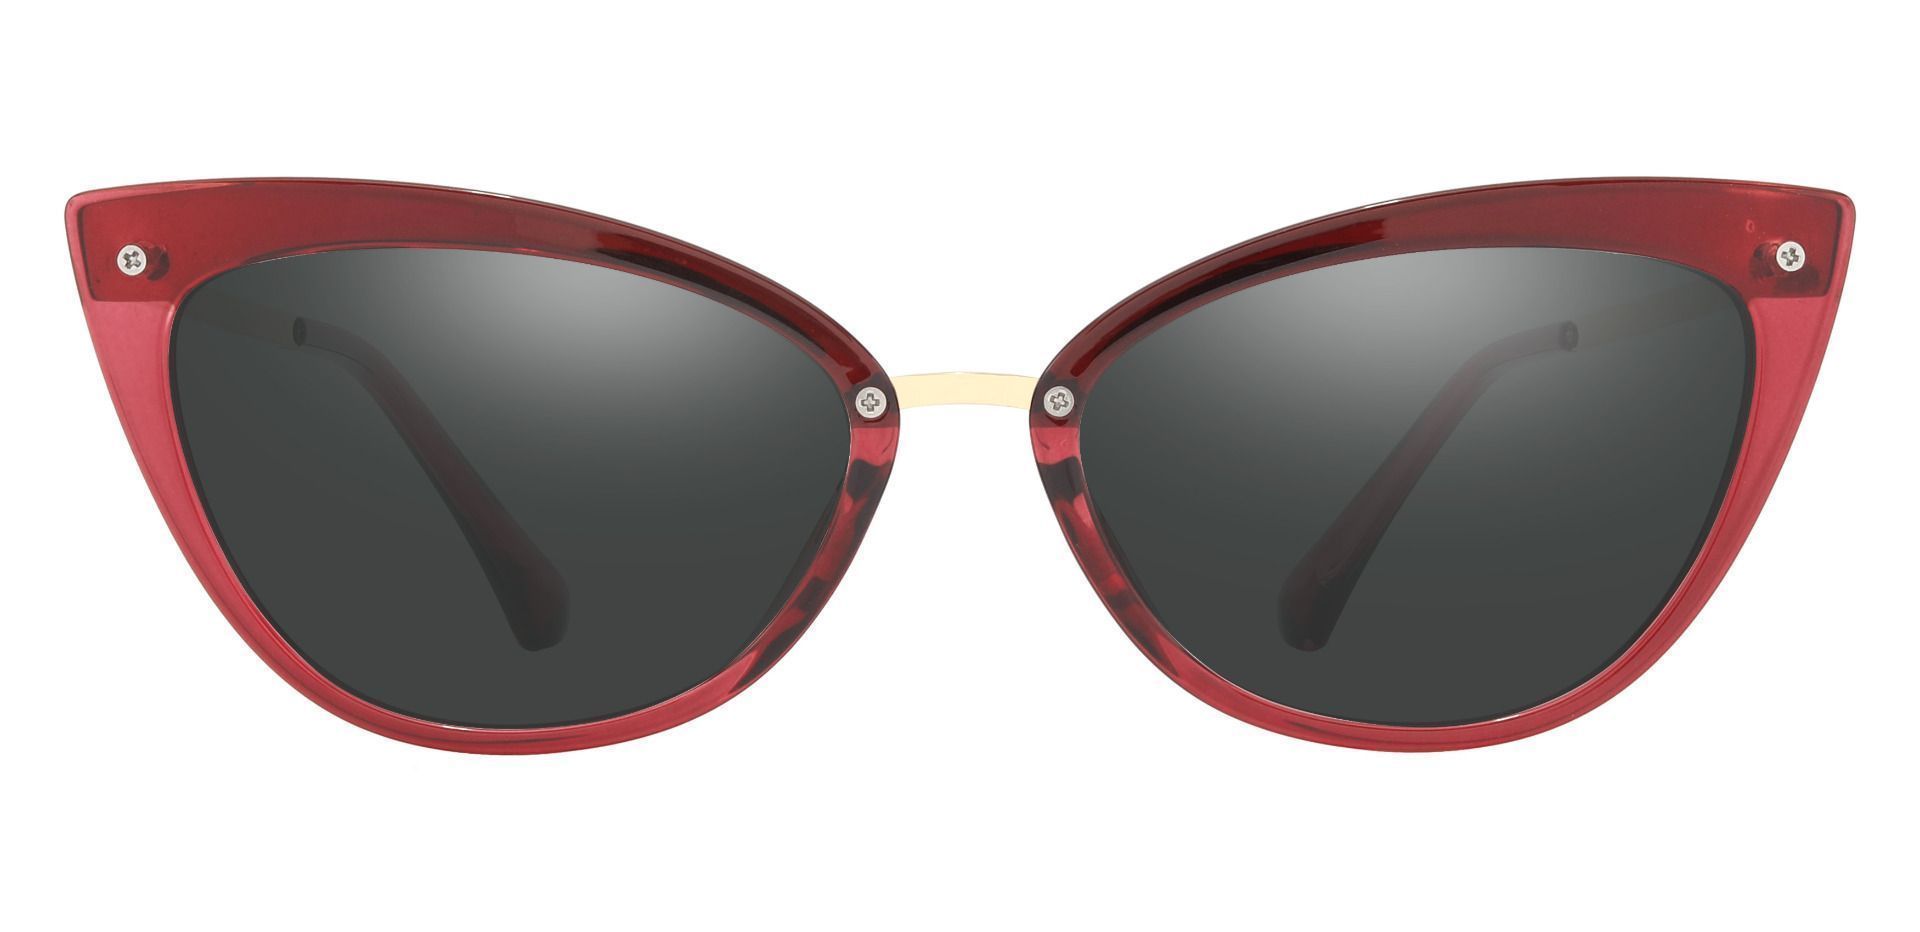 Glenda Cat Eye Prescription Sunglasses - Red Frame With Gray Lenses